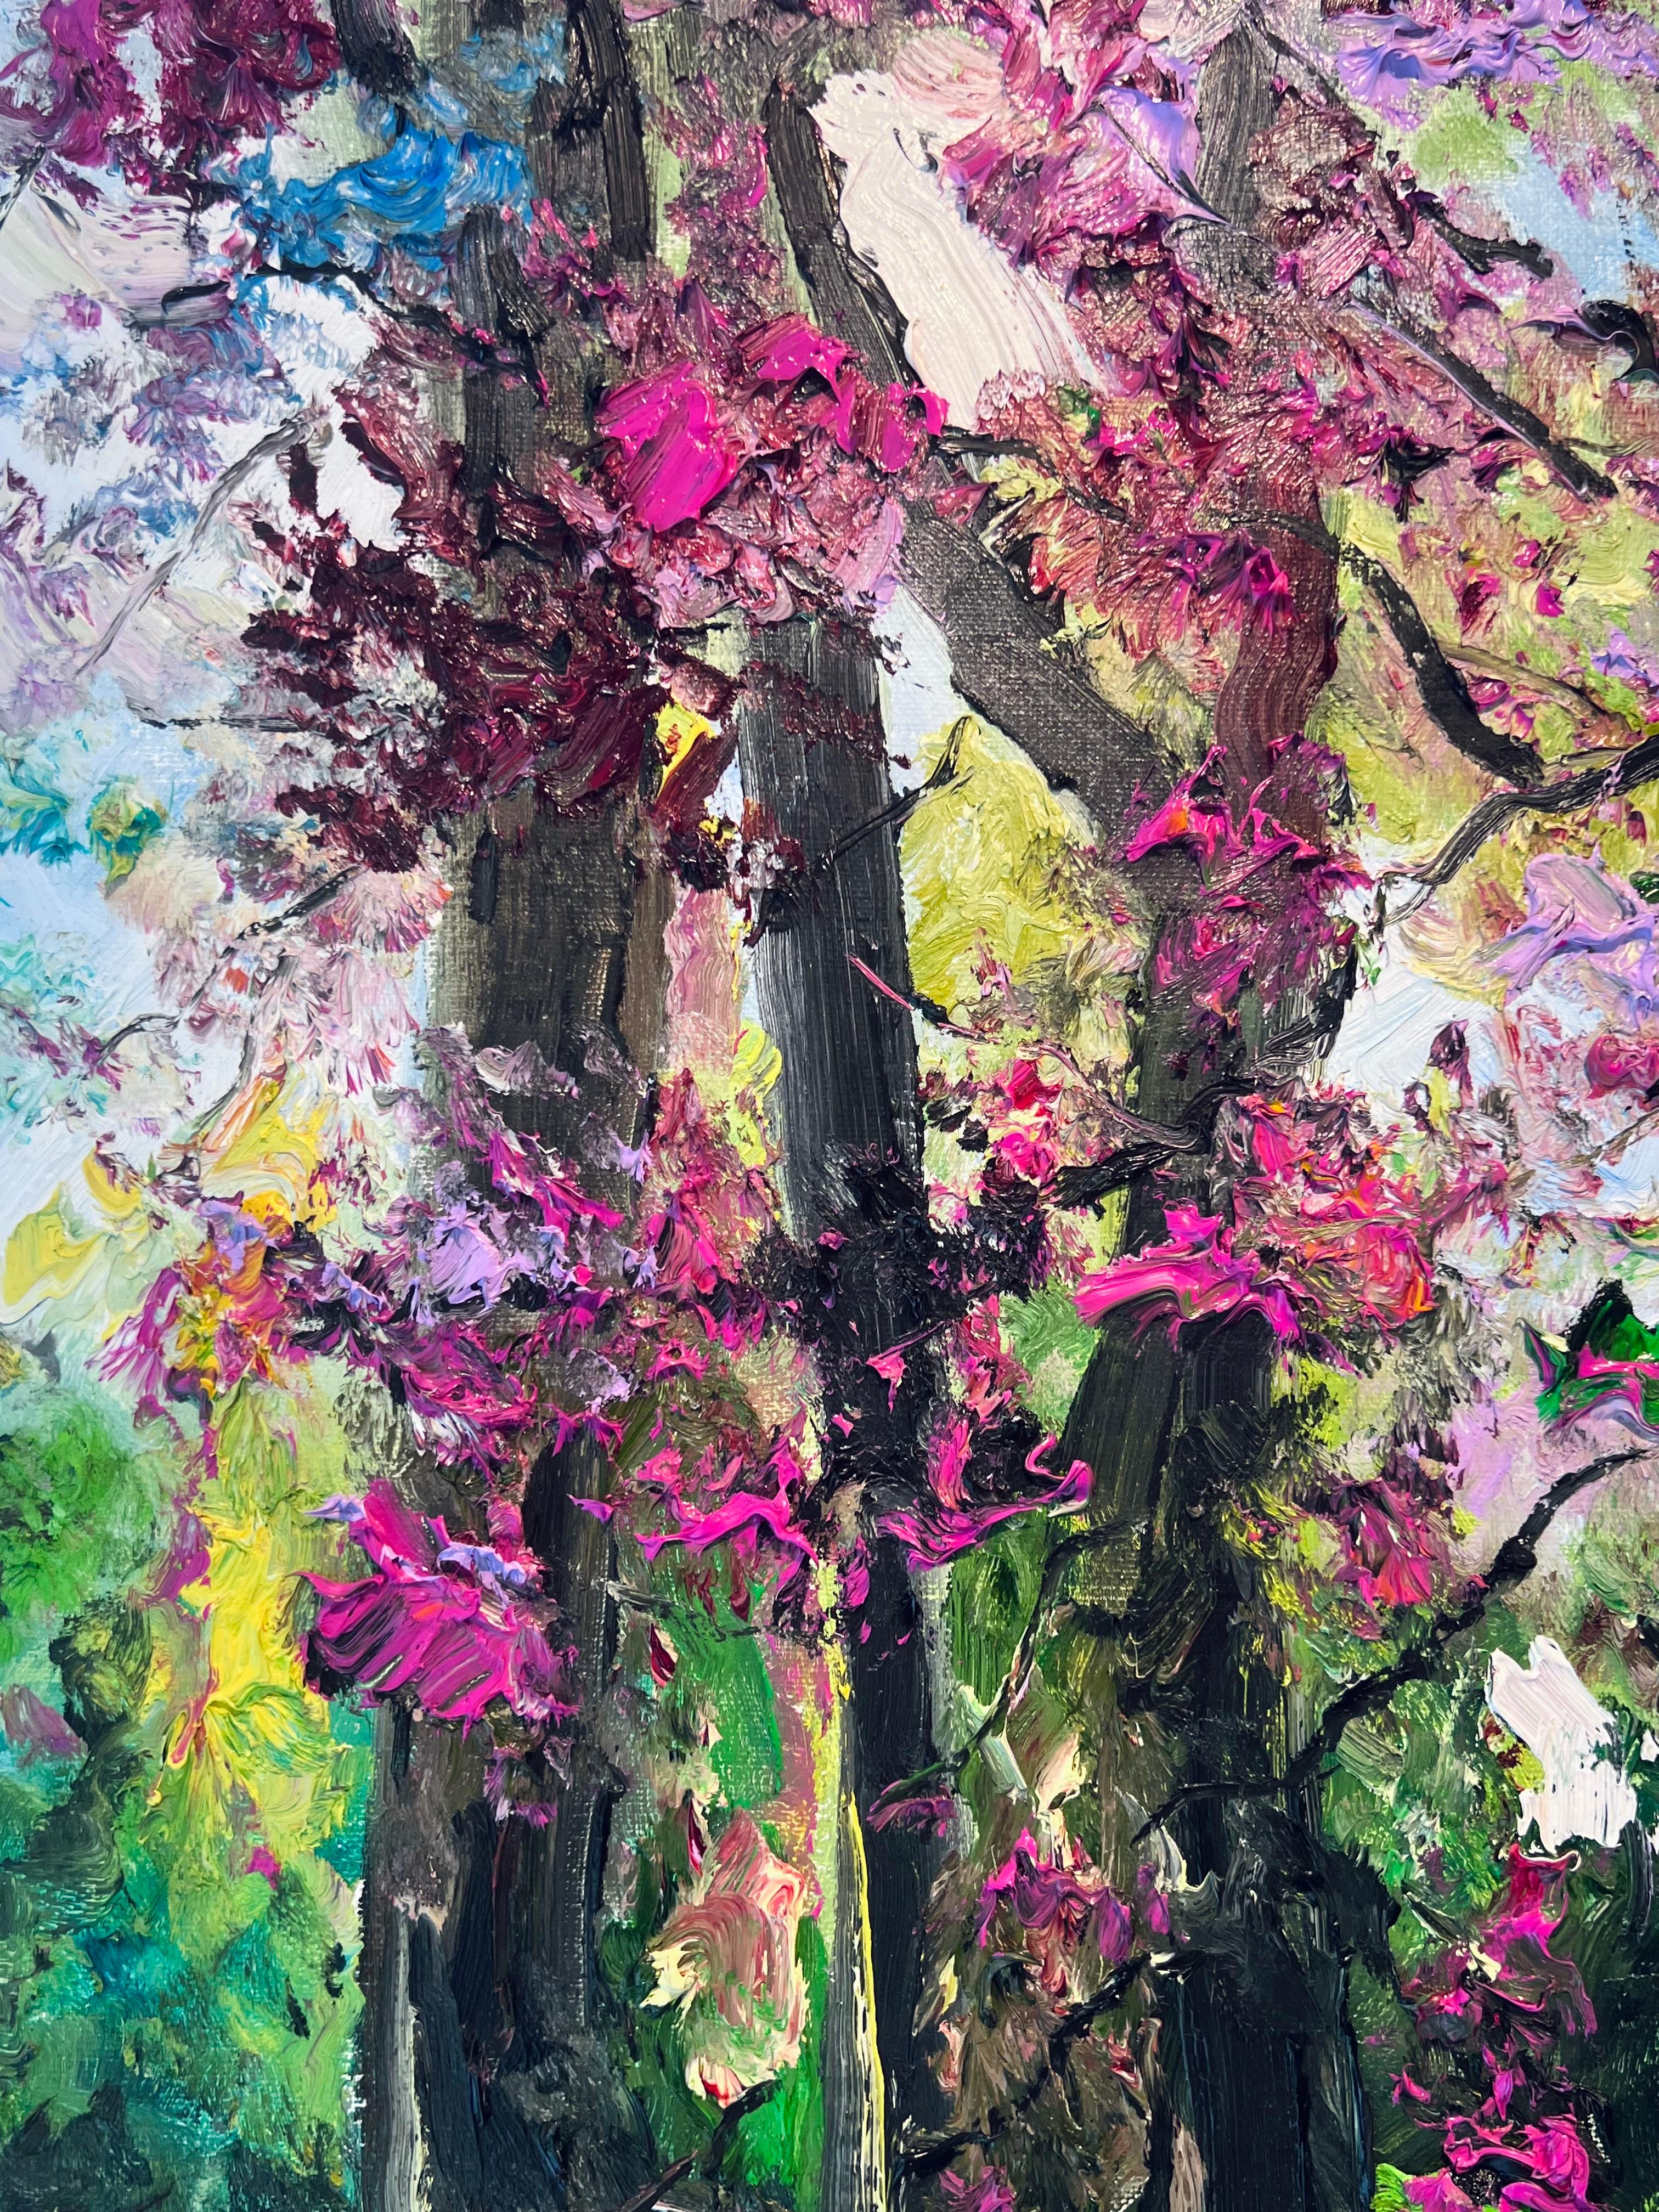 Frühling Wald-Original Impressionismus Landschaft Ölgemälde-Gegenwartskunst (Schwarz), Abstract Painting, von Denis Ribas 